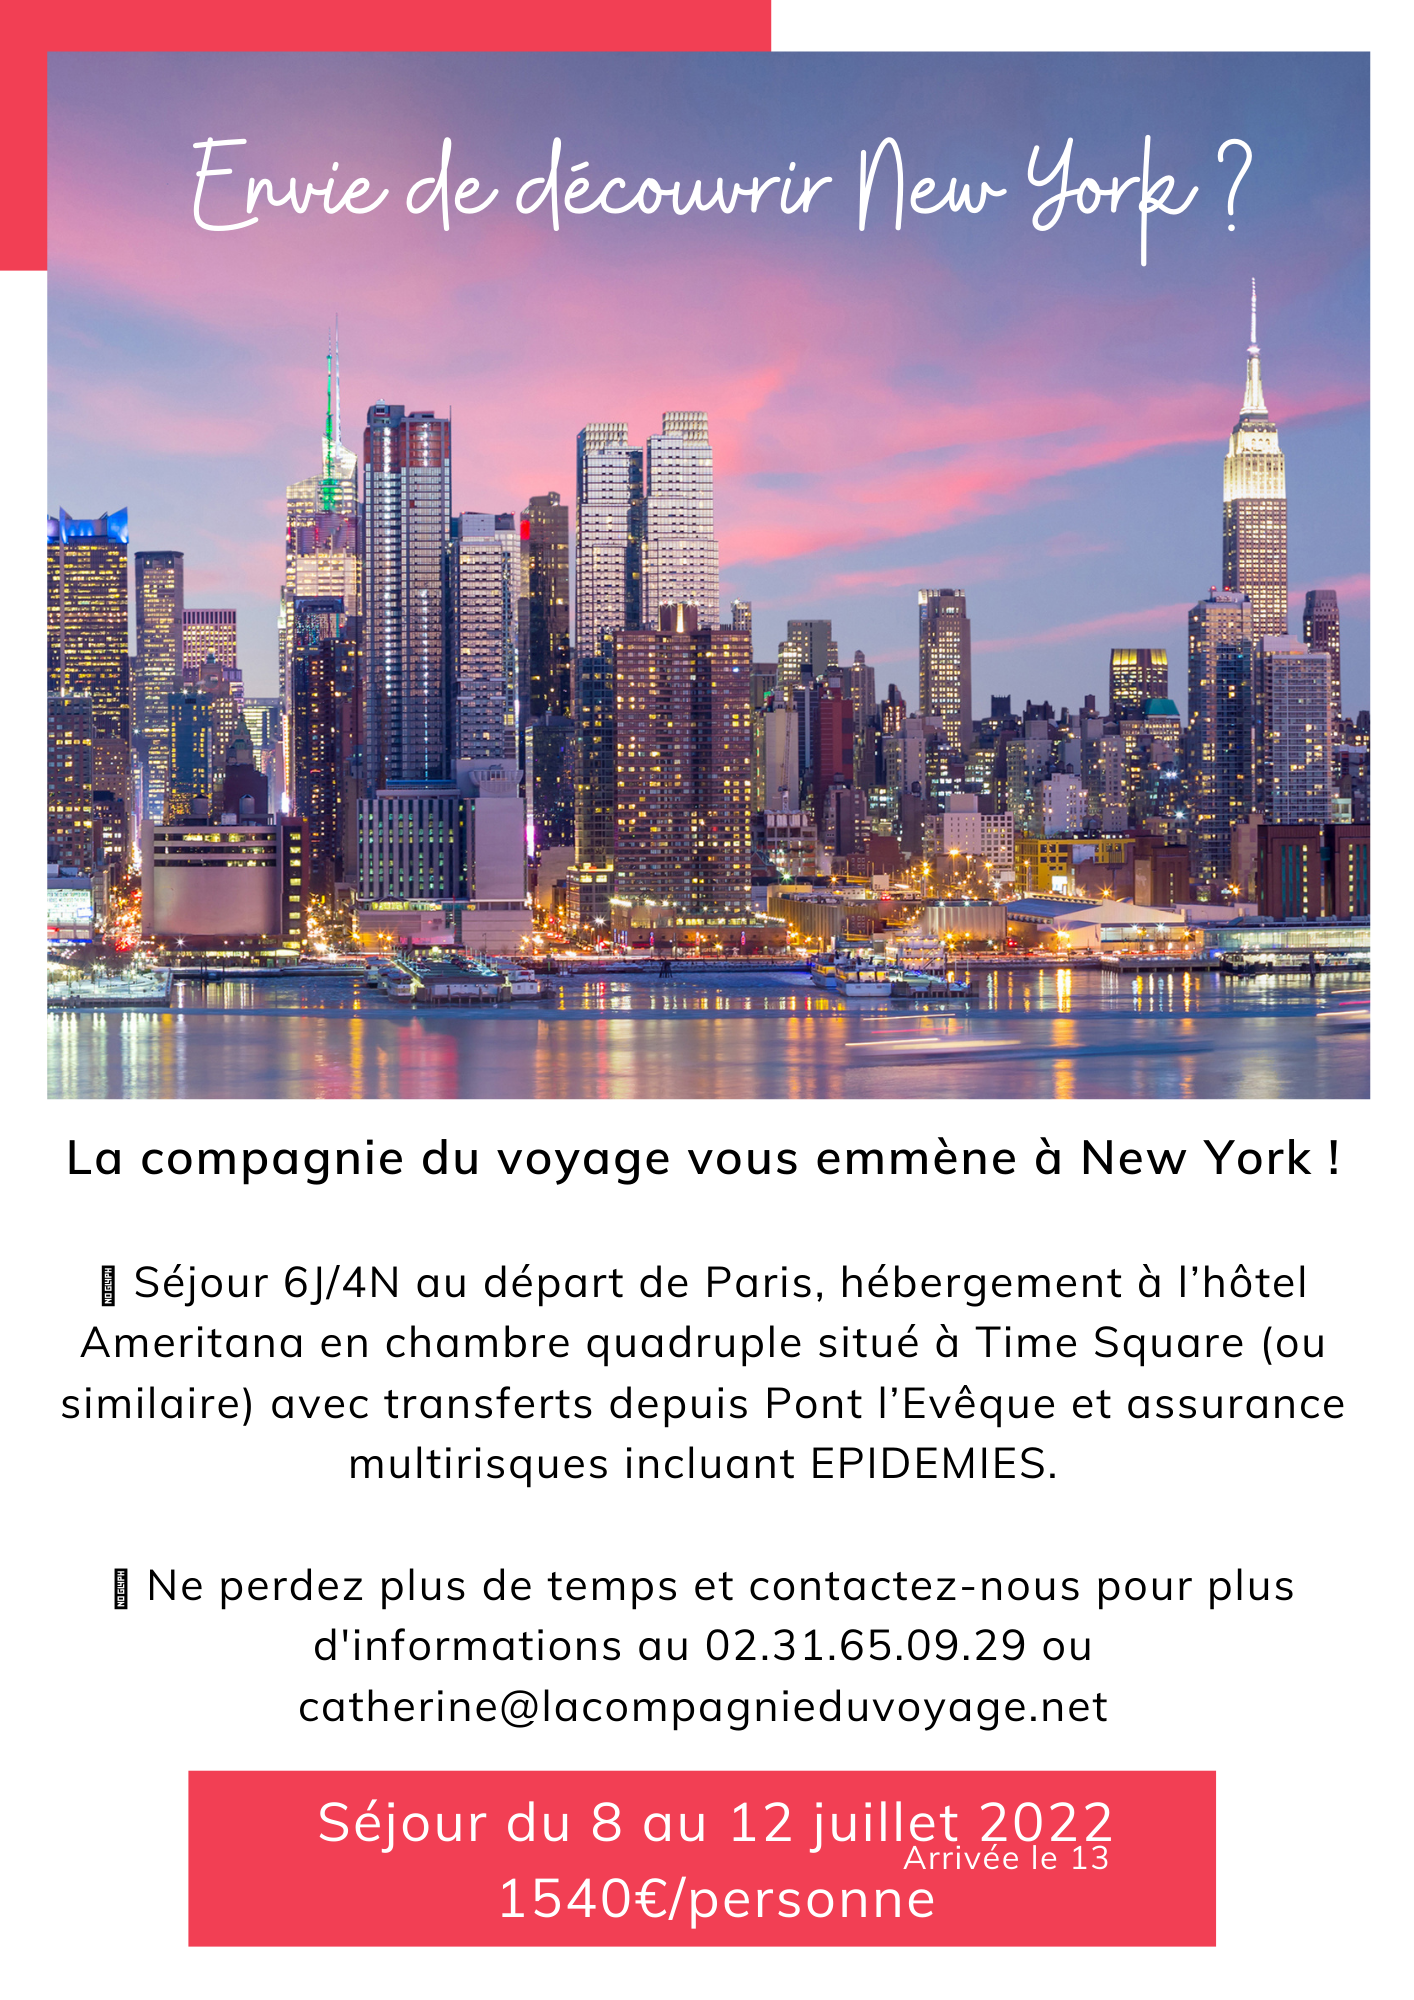 Séjour découverte de New York en Juillet 2022 avec votre agence de voyages de Pont l'évêque La Compagnie du Voyage